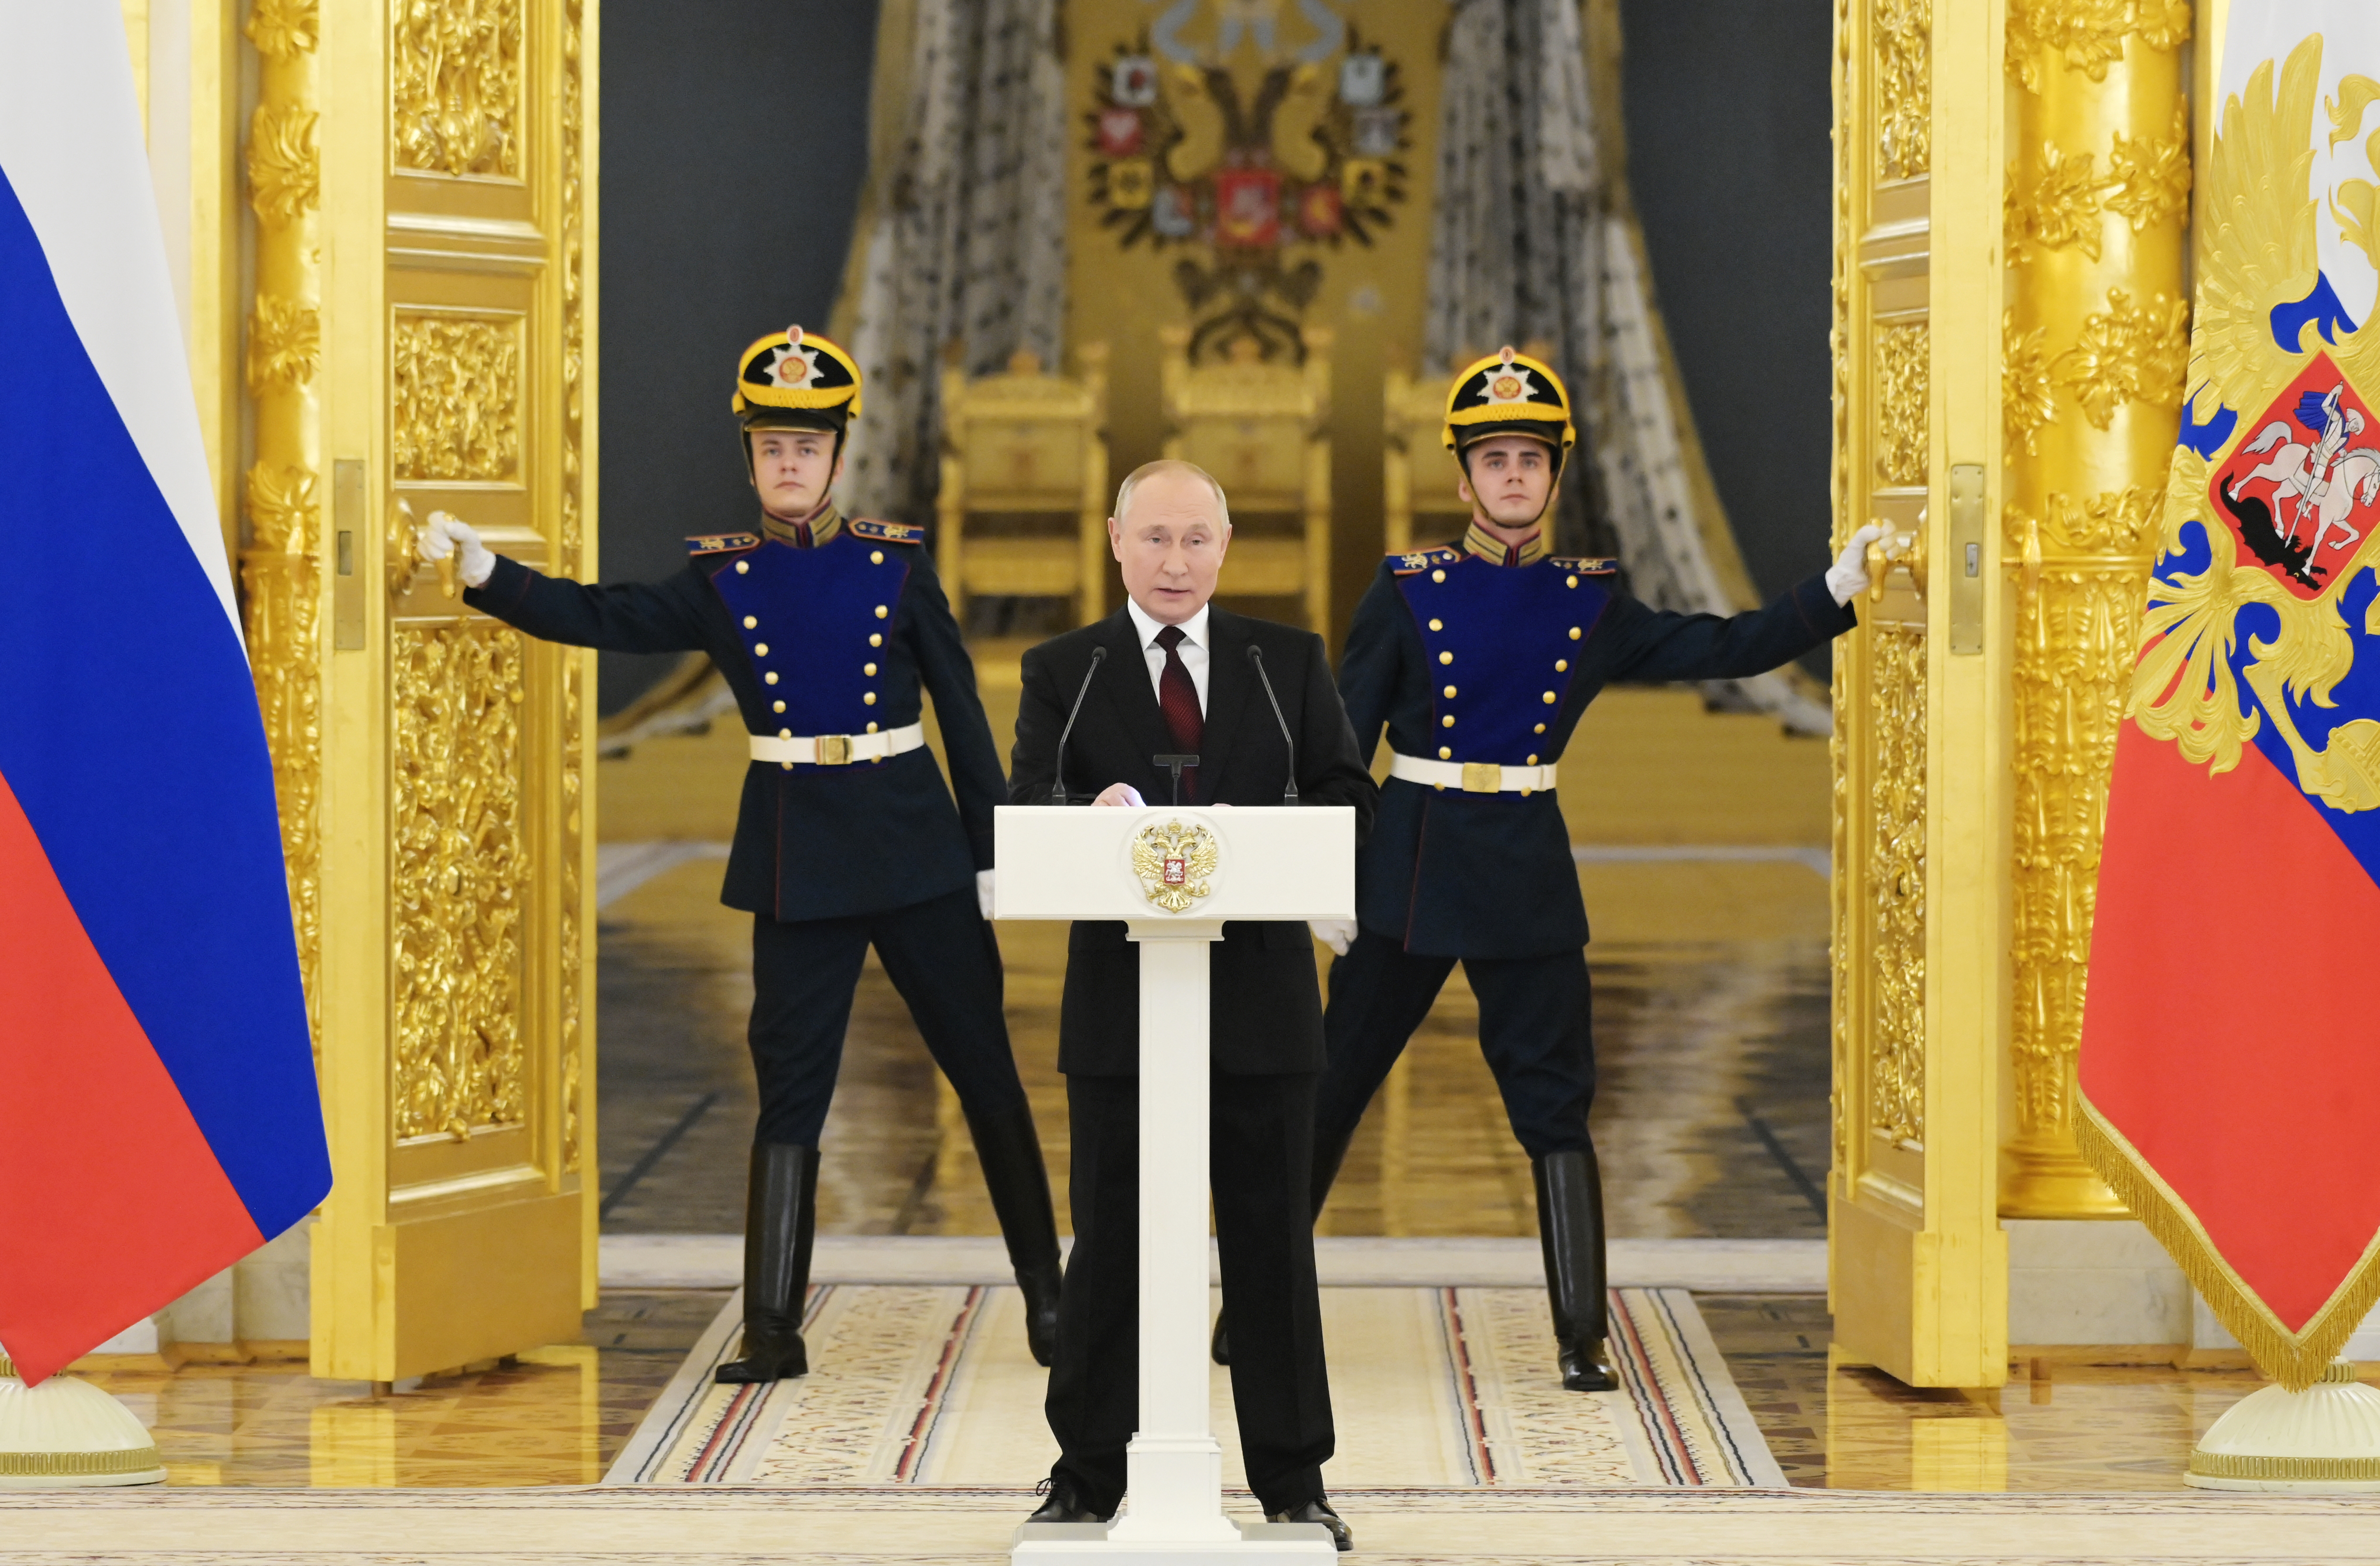 War, economy could weaken Putin's place as leader | Analysis